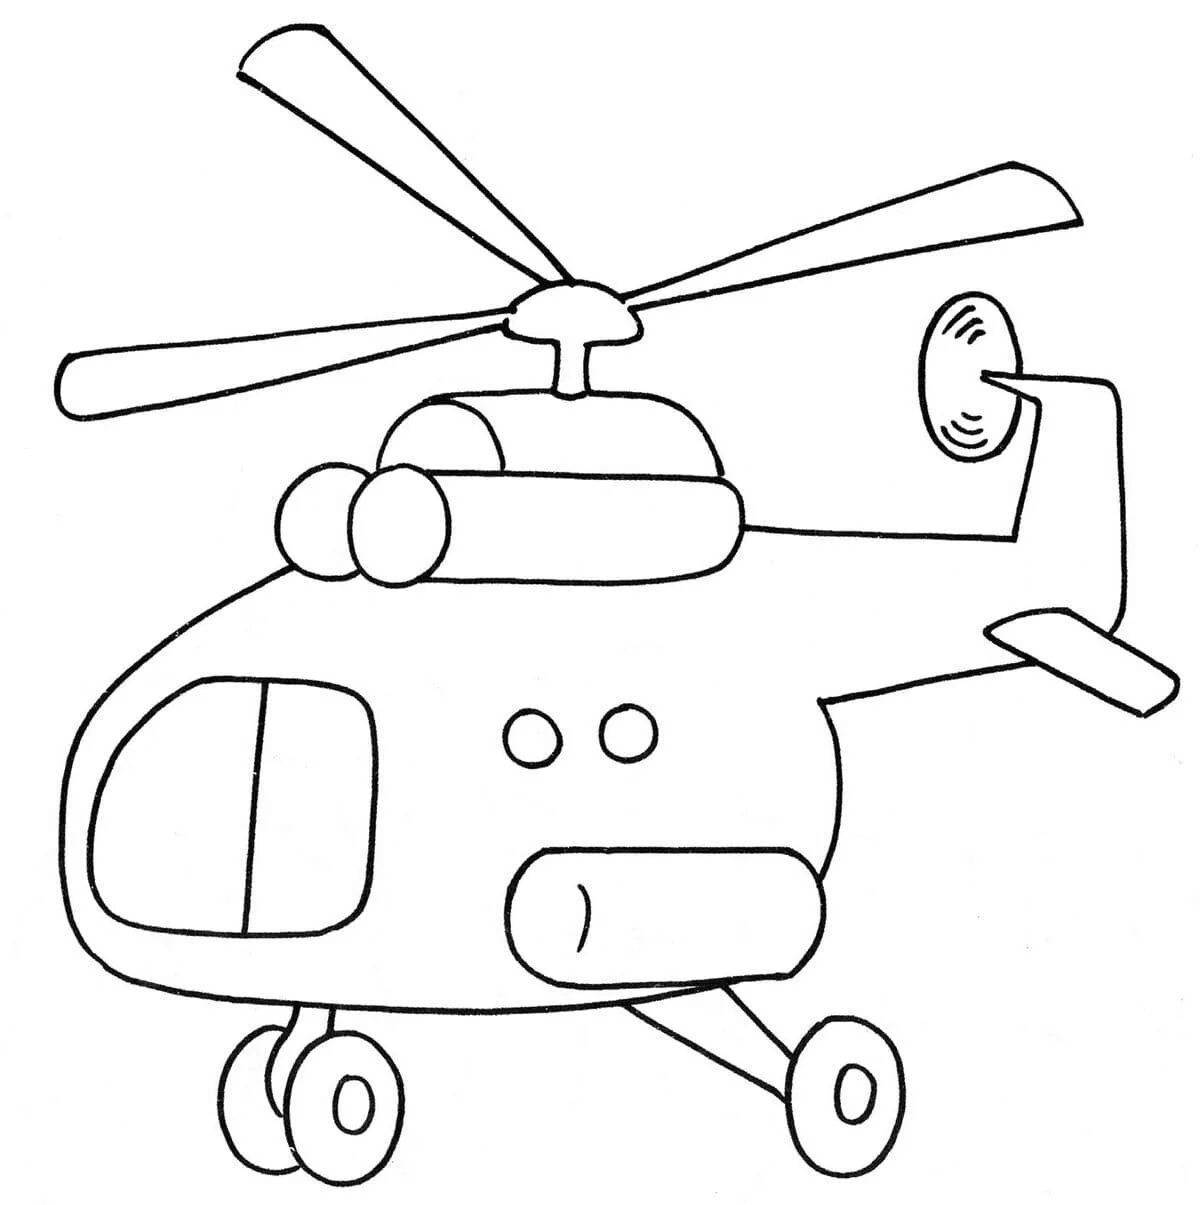 Привлекательный военный вертолет раскраски для детей